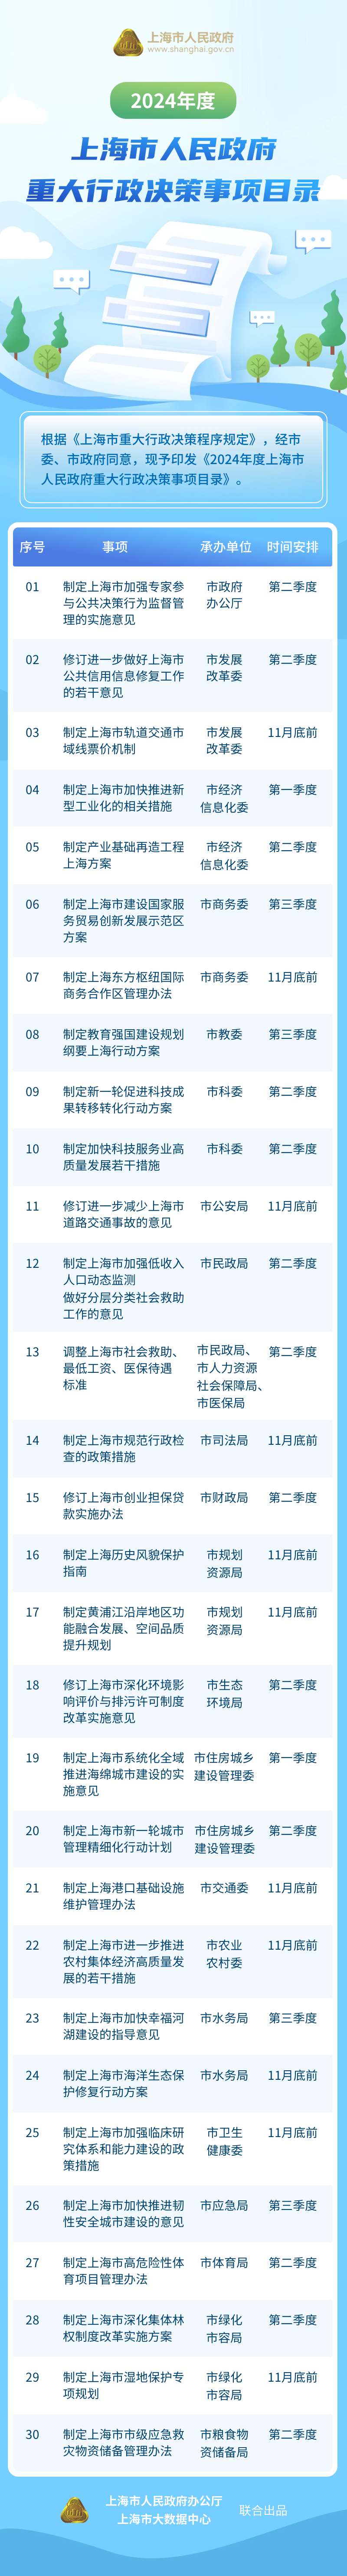 《2024年度上海市人民政府重大行政决策事项目录》图解.jpg